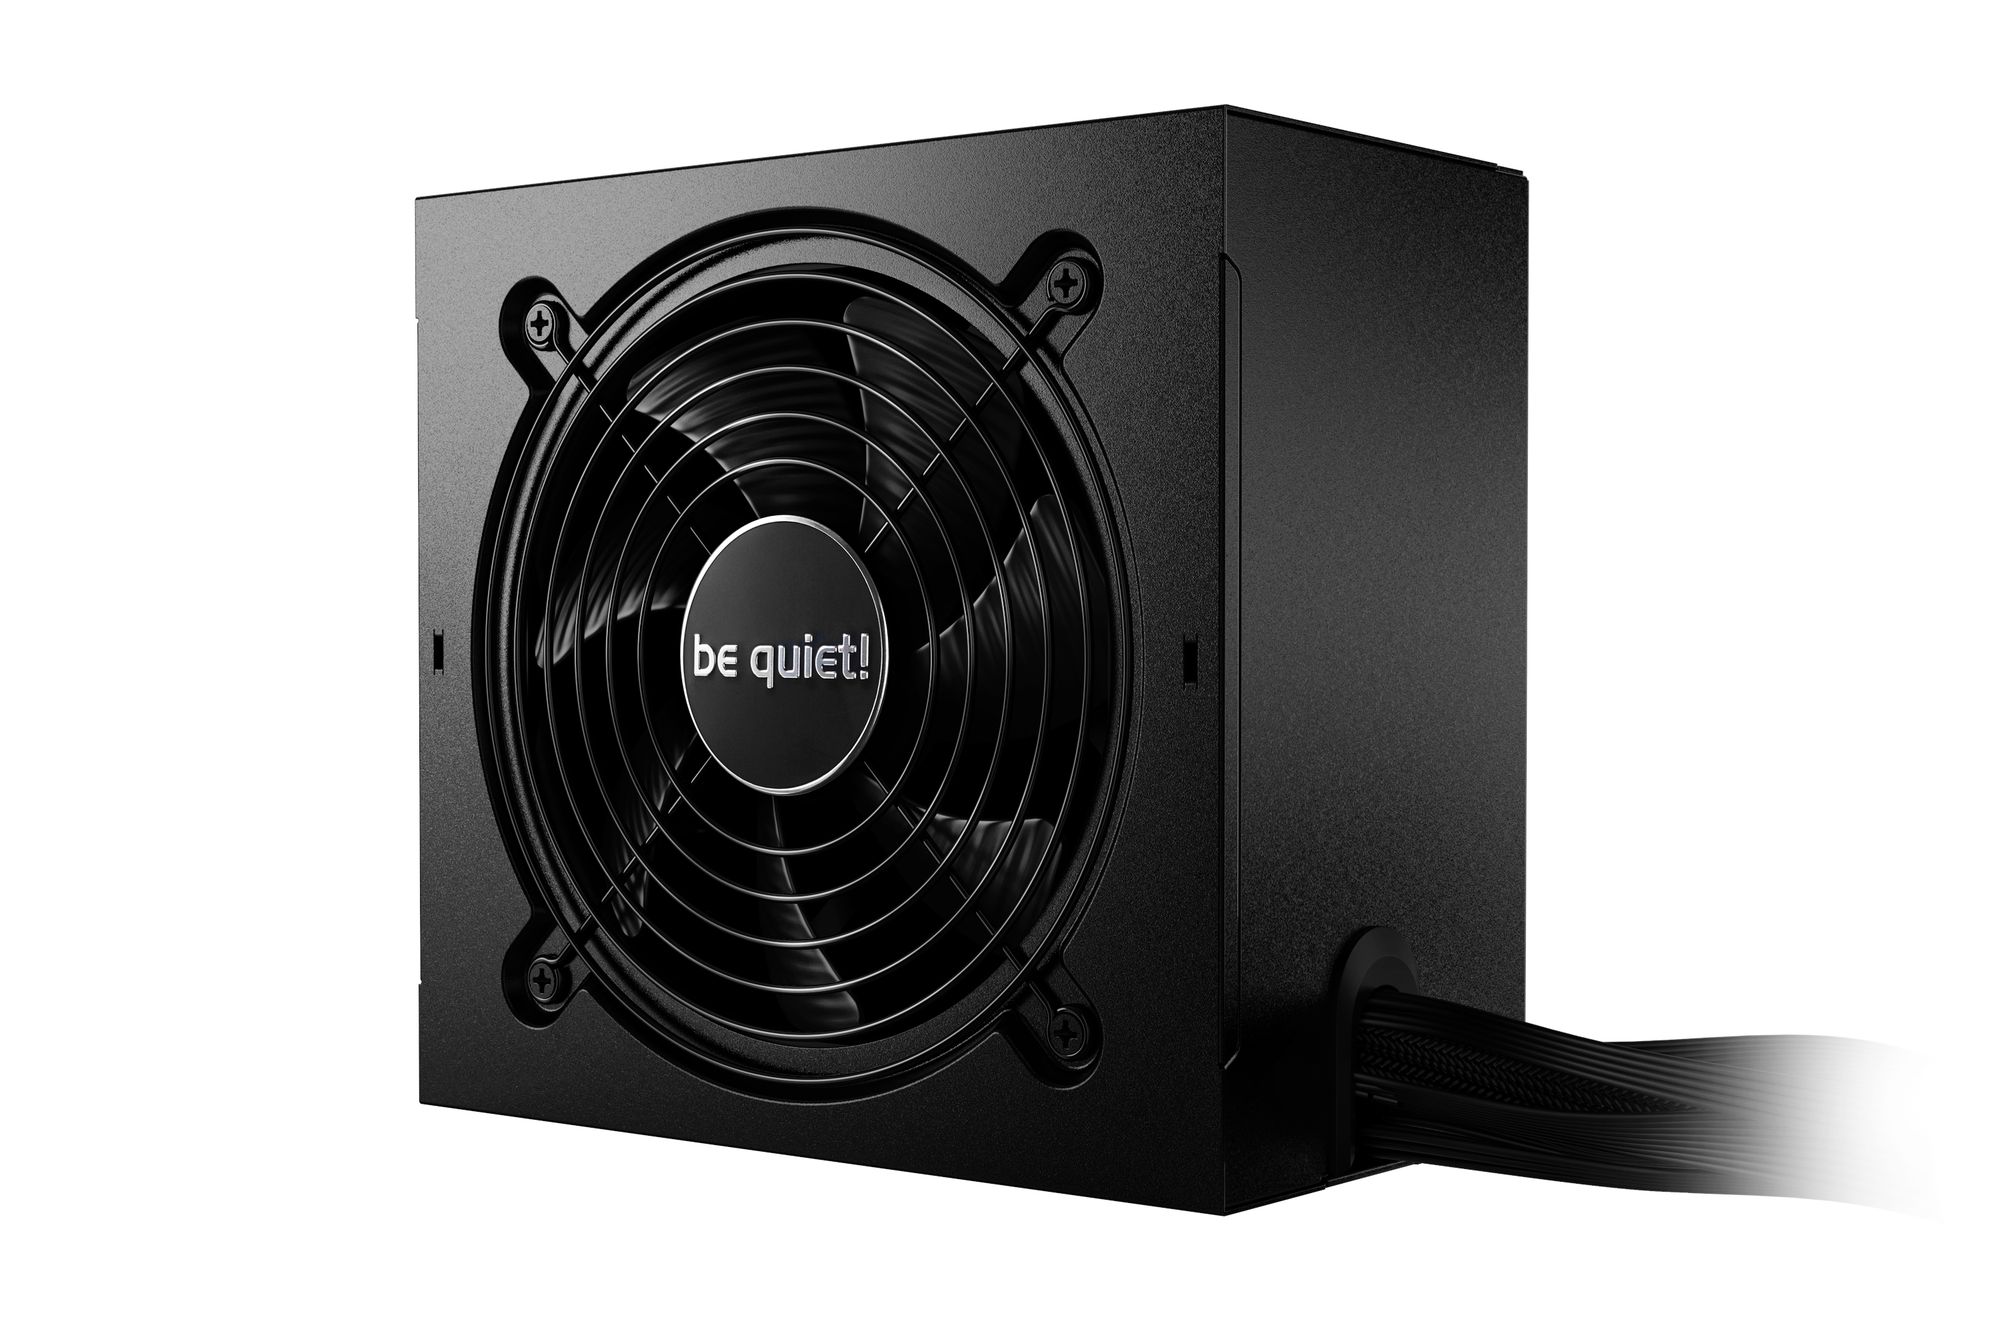 Блок питания be quiet! System Power 10 850W (BN330) вентилятор glacialtech gt ice 8s 80x80x25mm 3 pin 4 pin molex 20db 67gr ret